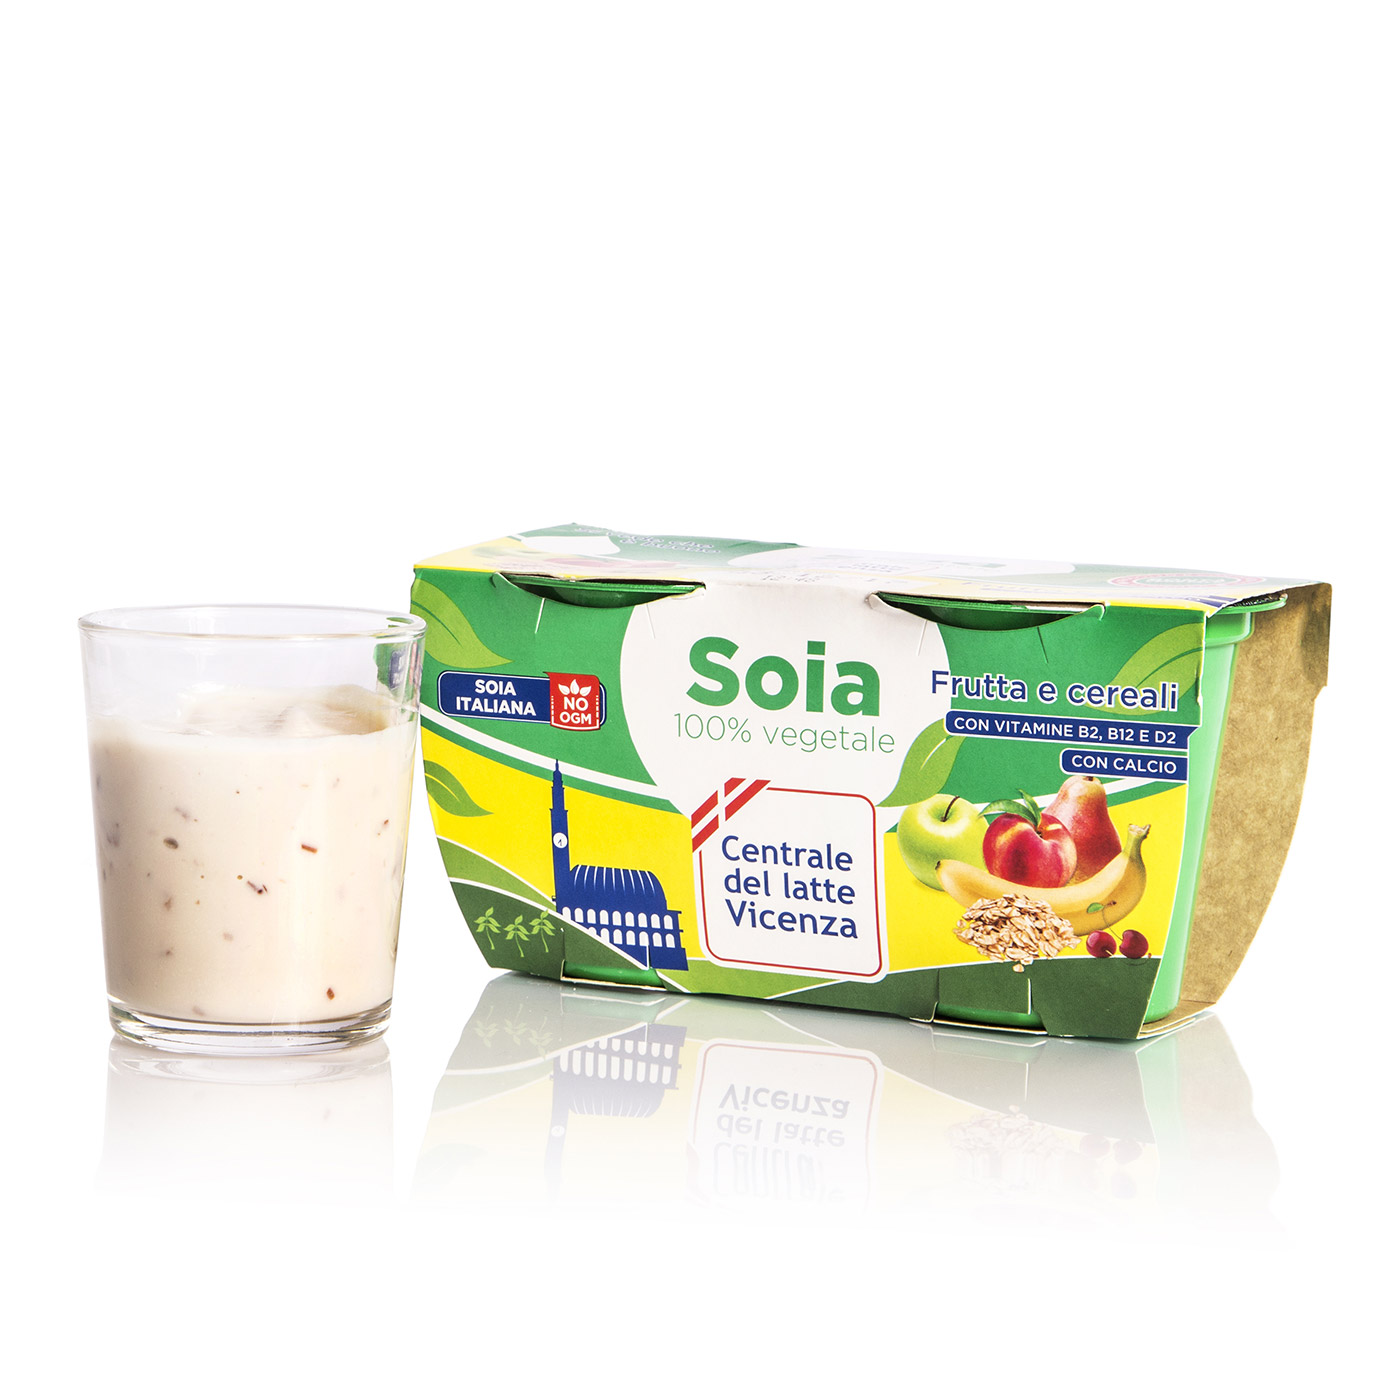 Yogurt di soia frutta e cereali 2x125g Centrale del Latte Vicenza